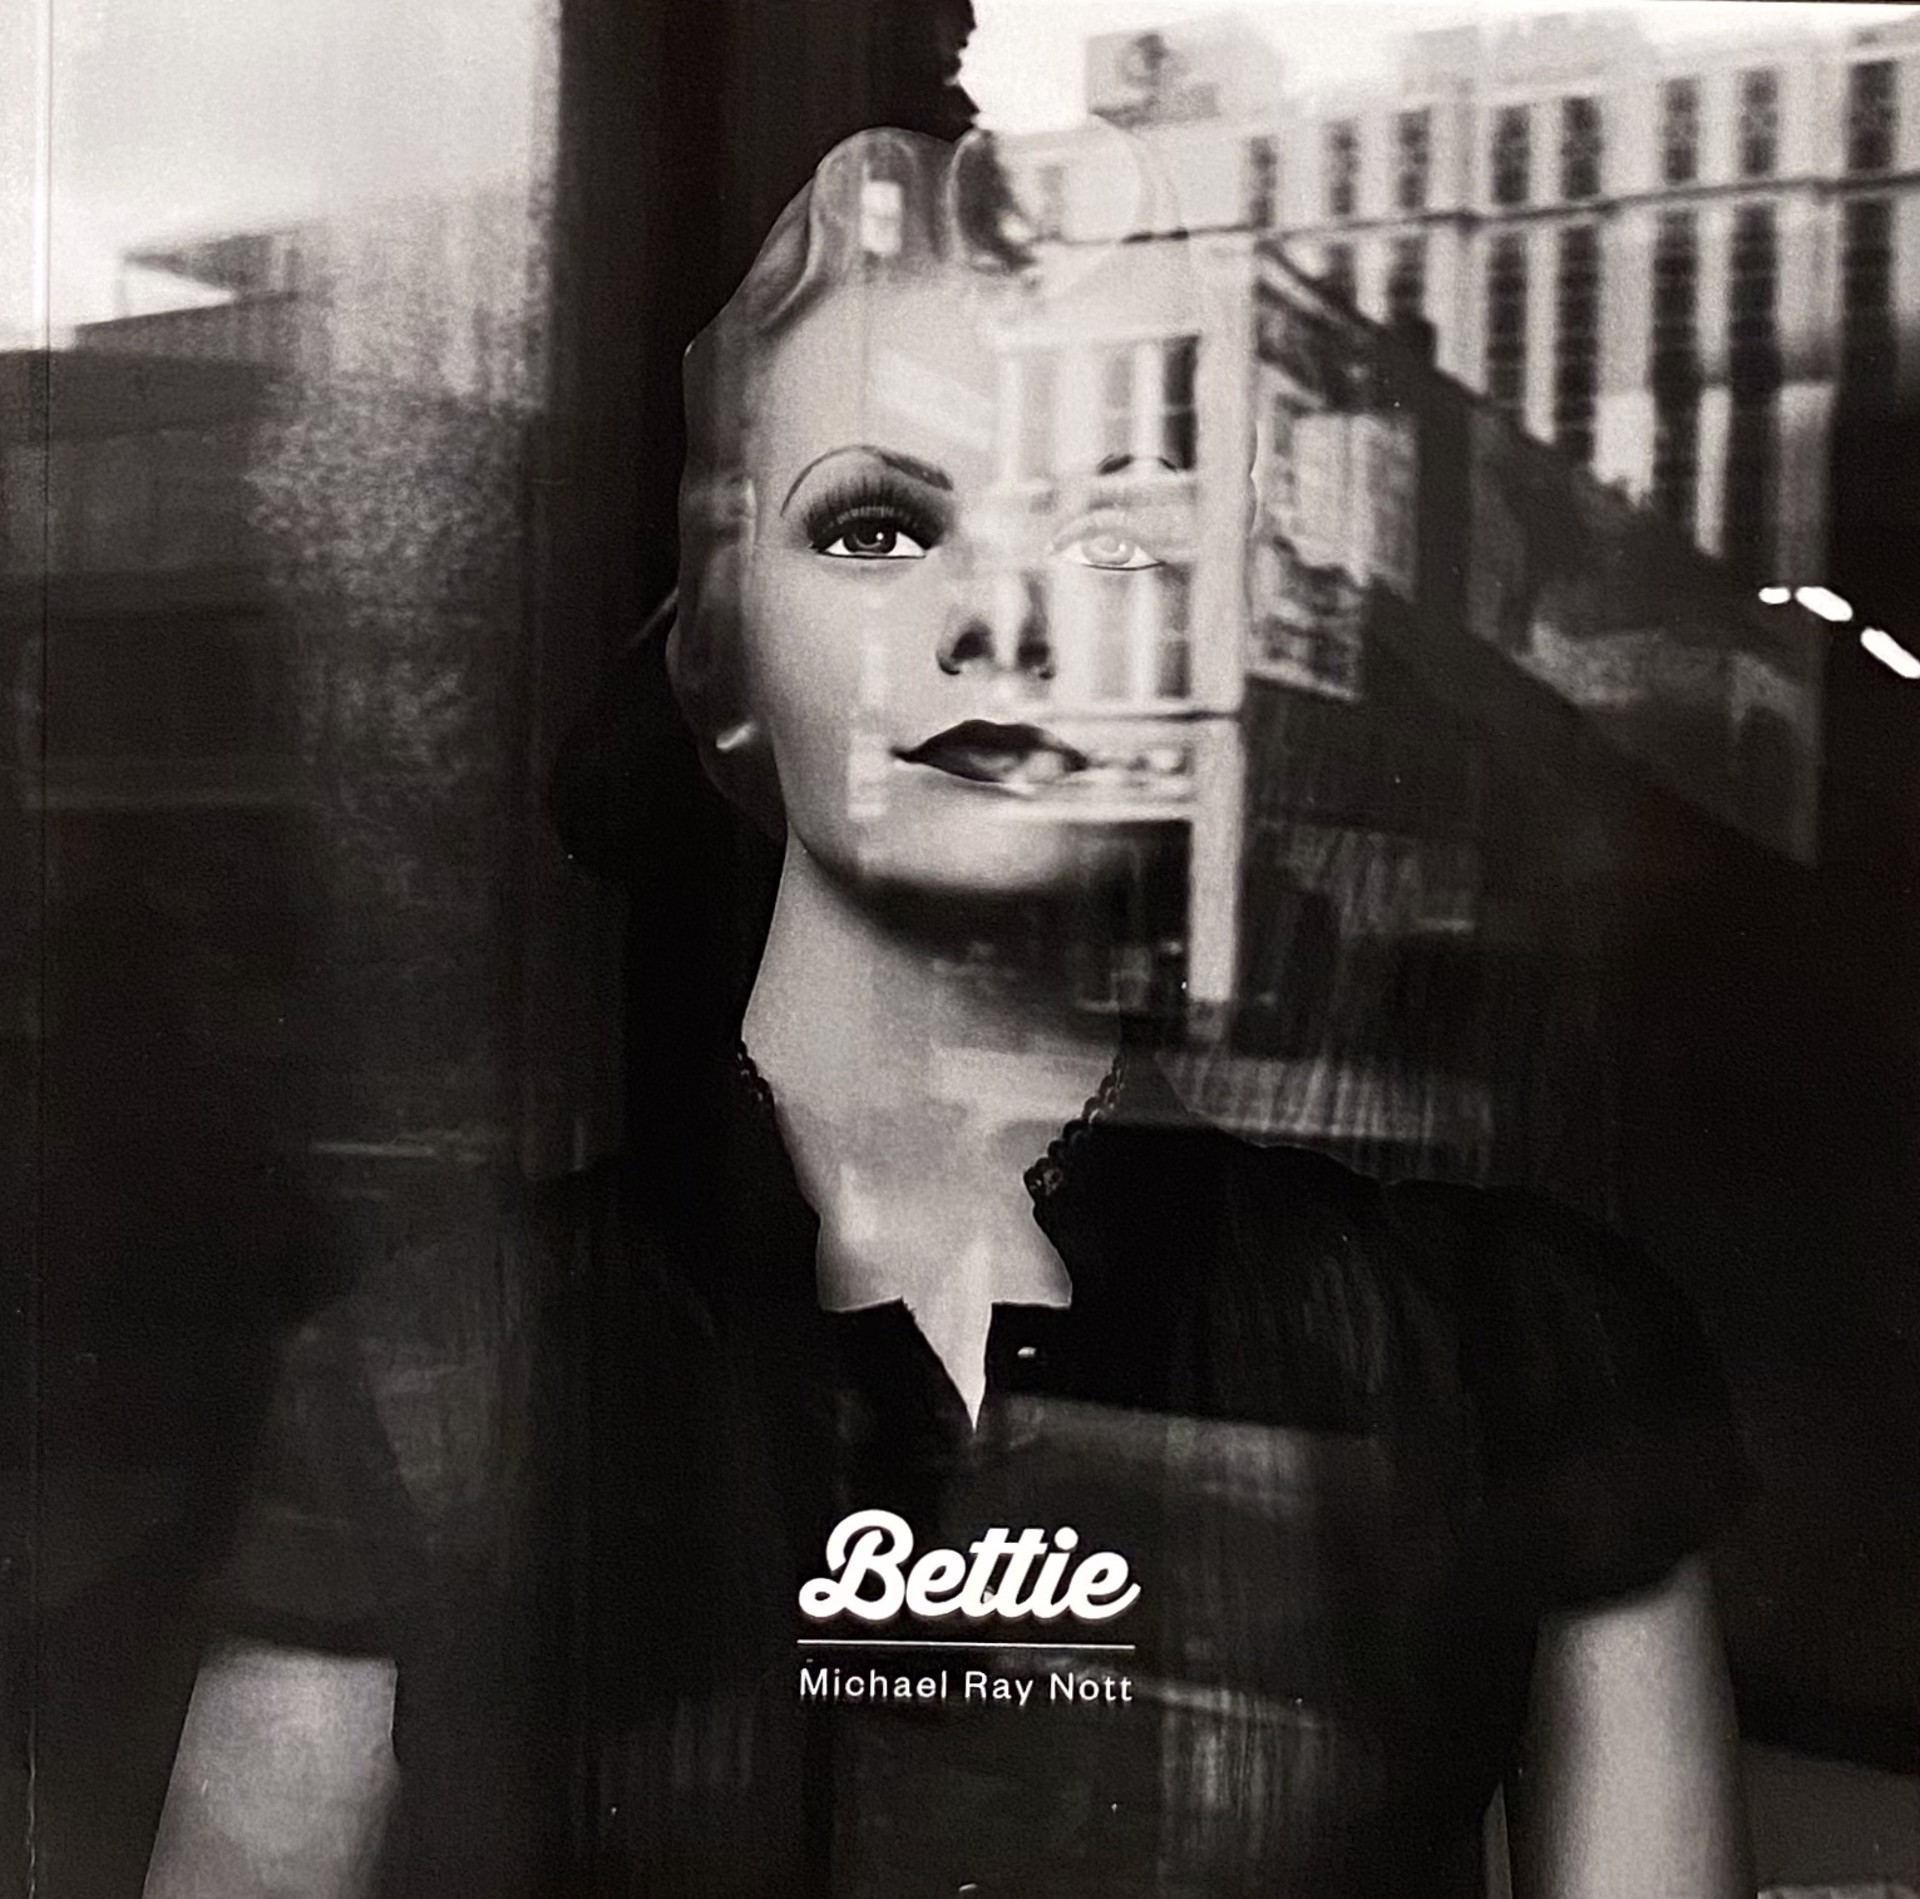 Bettie by Michael Ray Nott